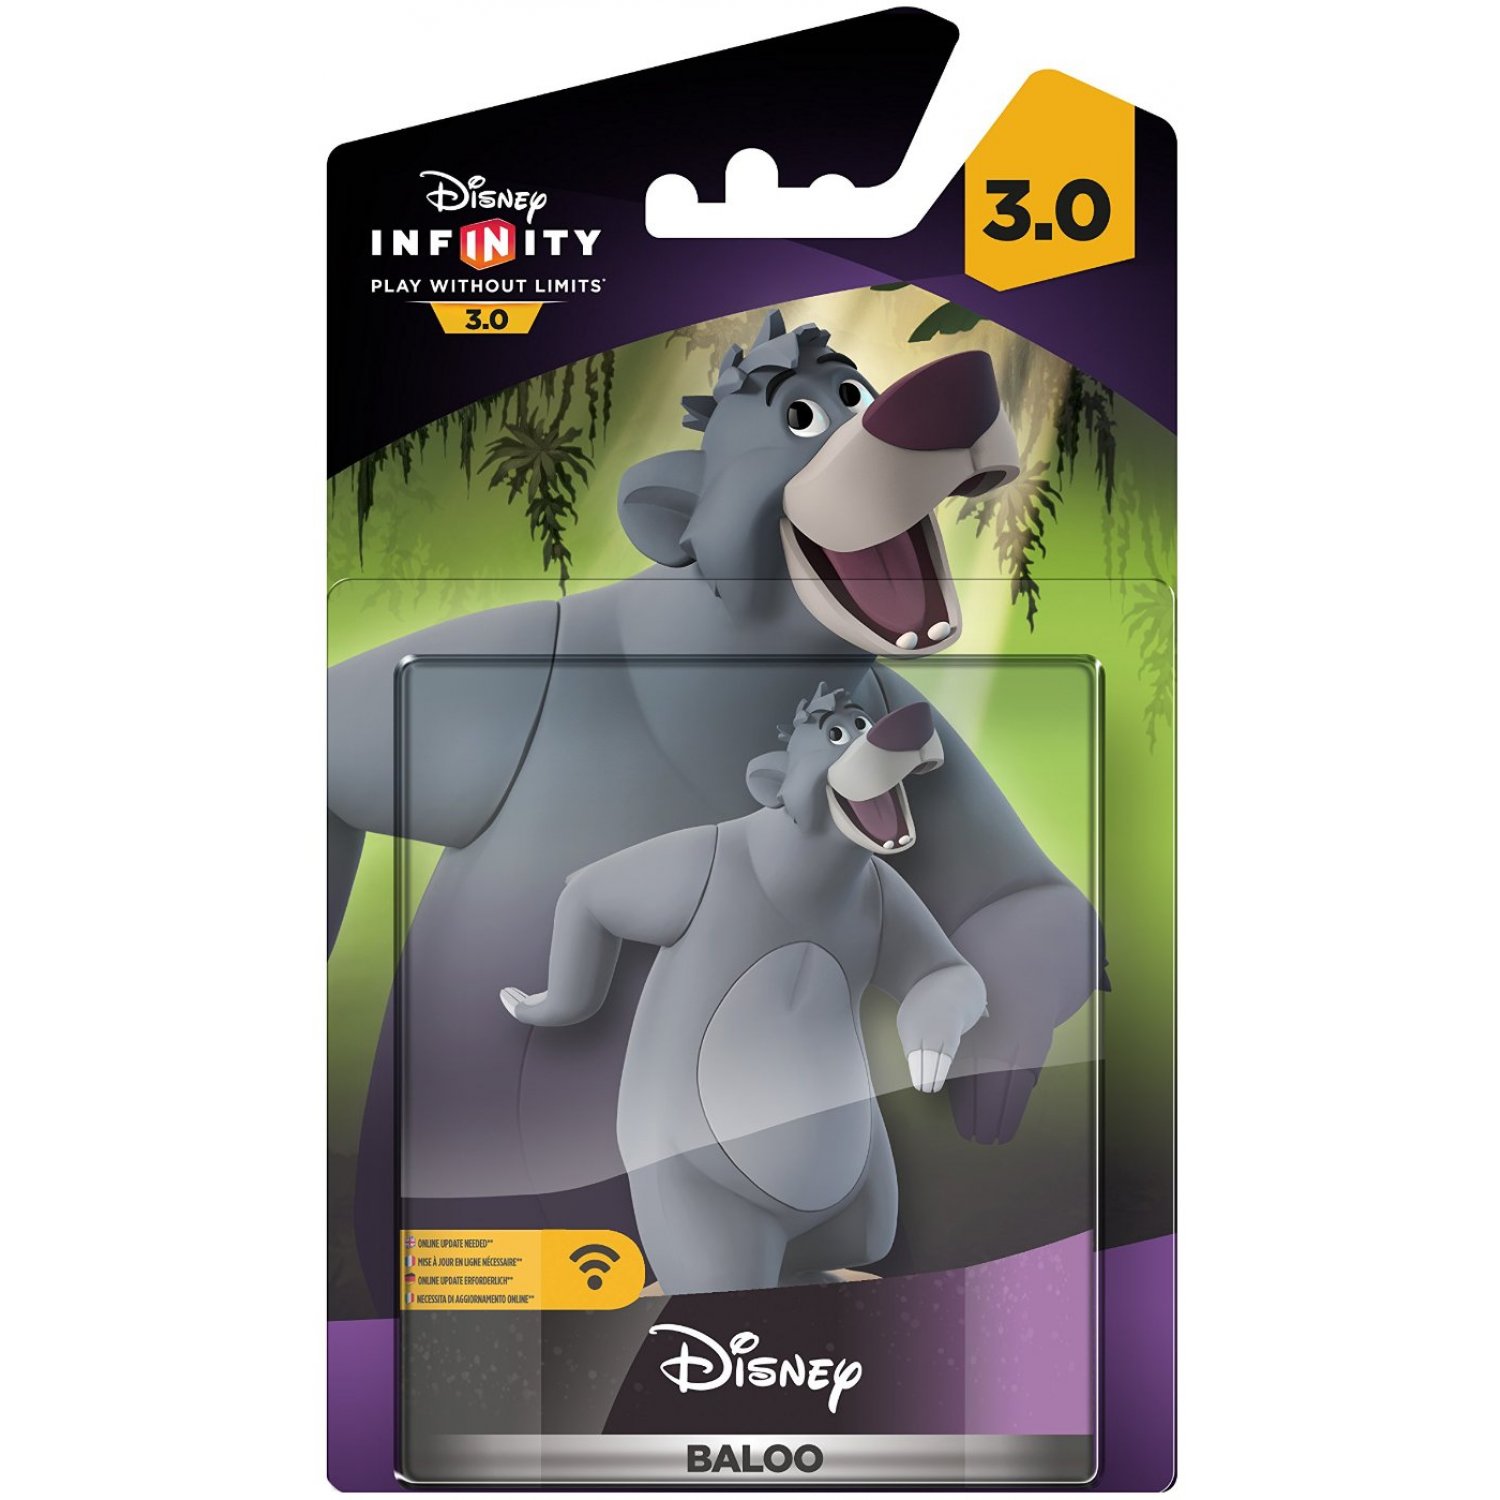 Disney Infinity 3.0 Baloo